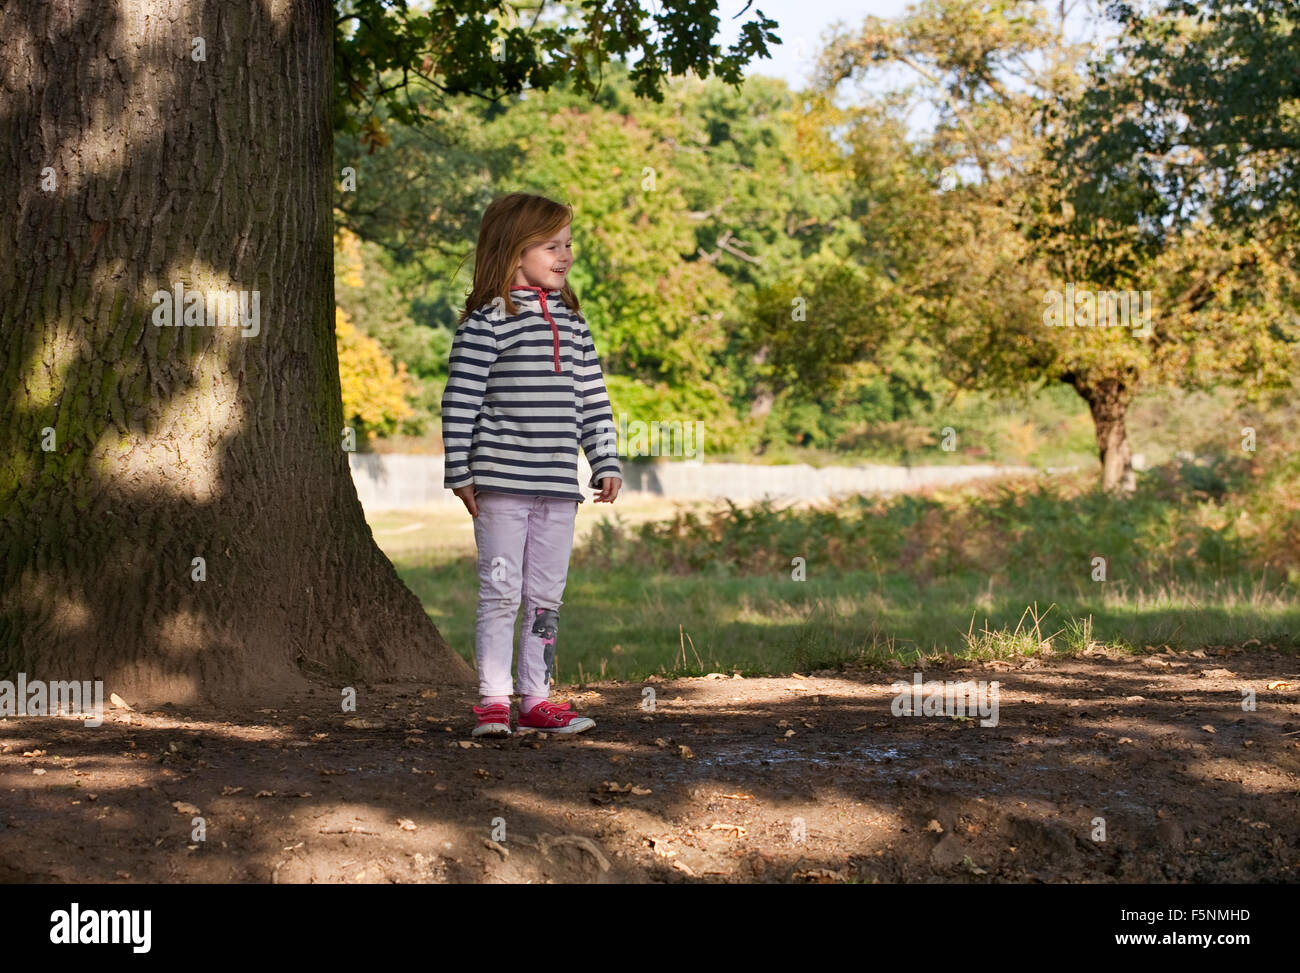 Una giovane ragazza sorge nell'ombra di un grande albero sorridente a qualcosa al di fuori dell'immagine. Essa è fiera con i capelli di zenzero. Foto Stock